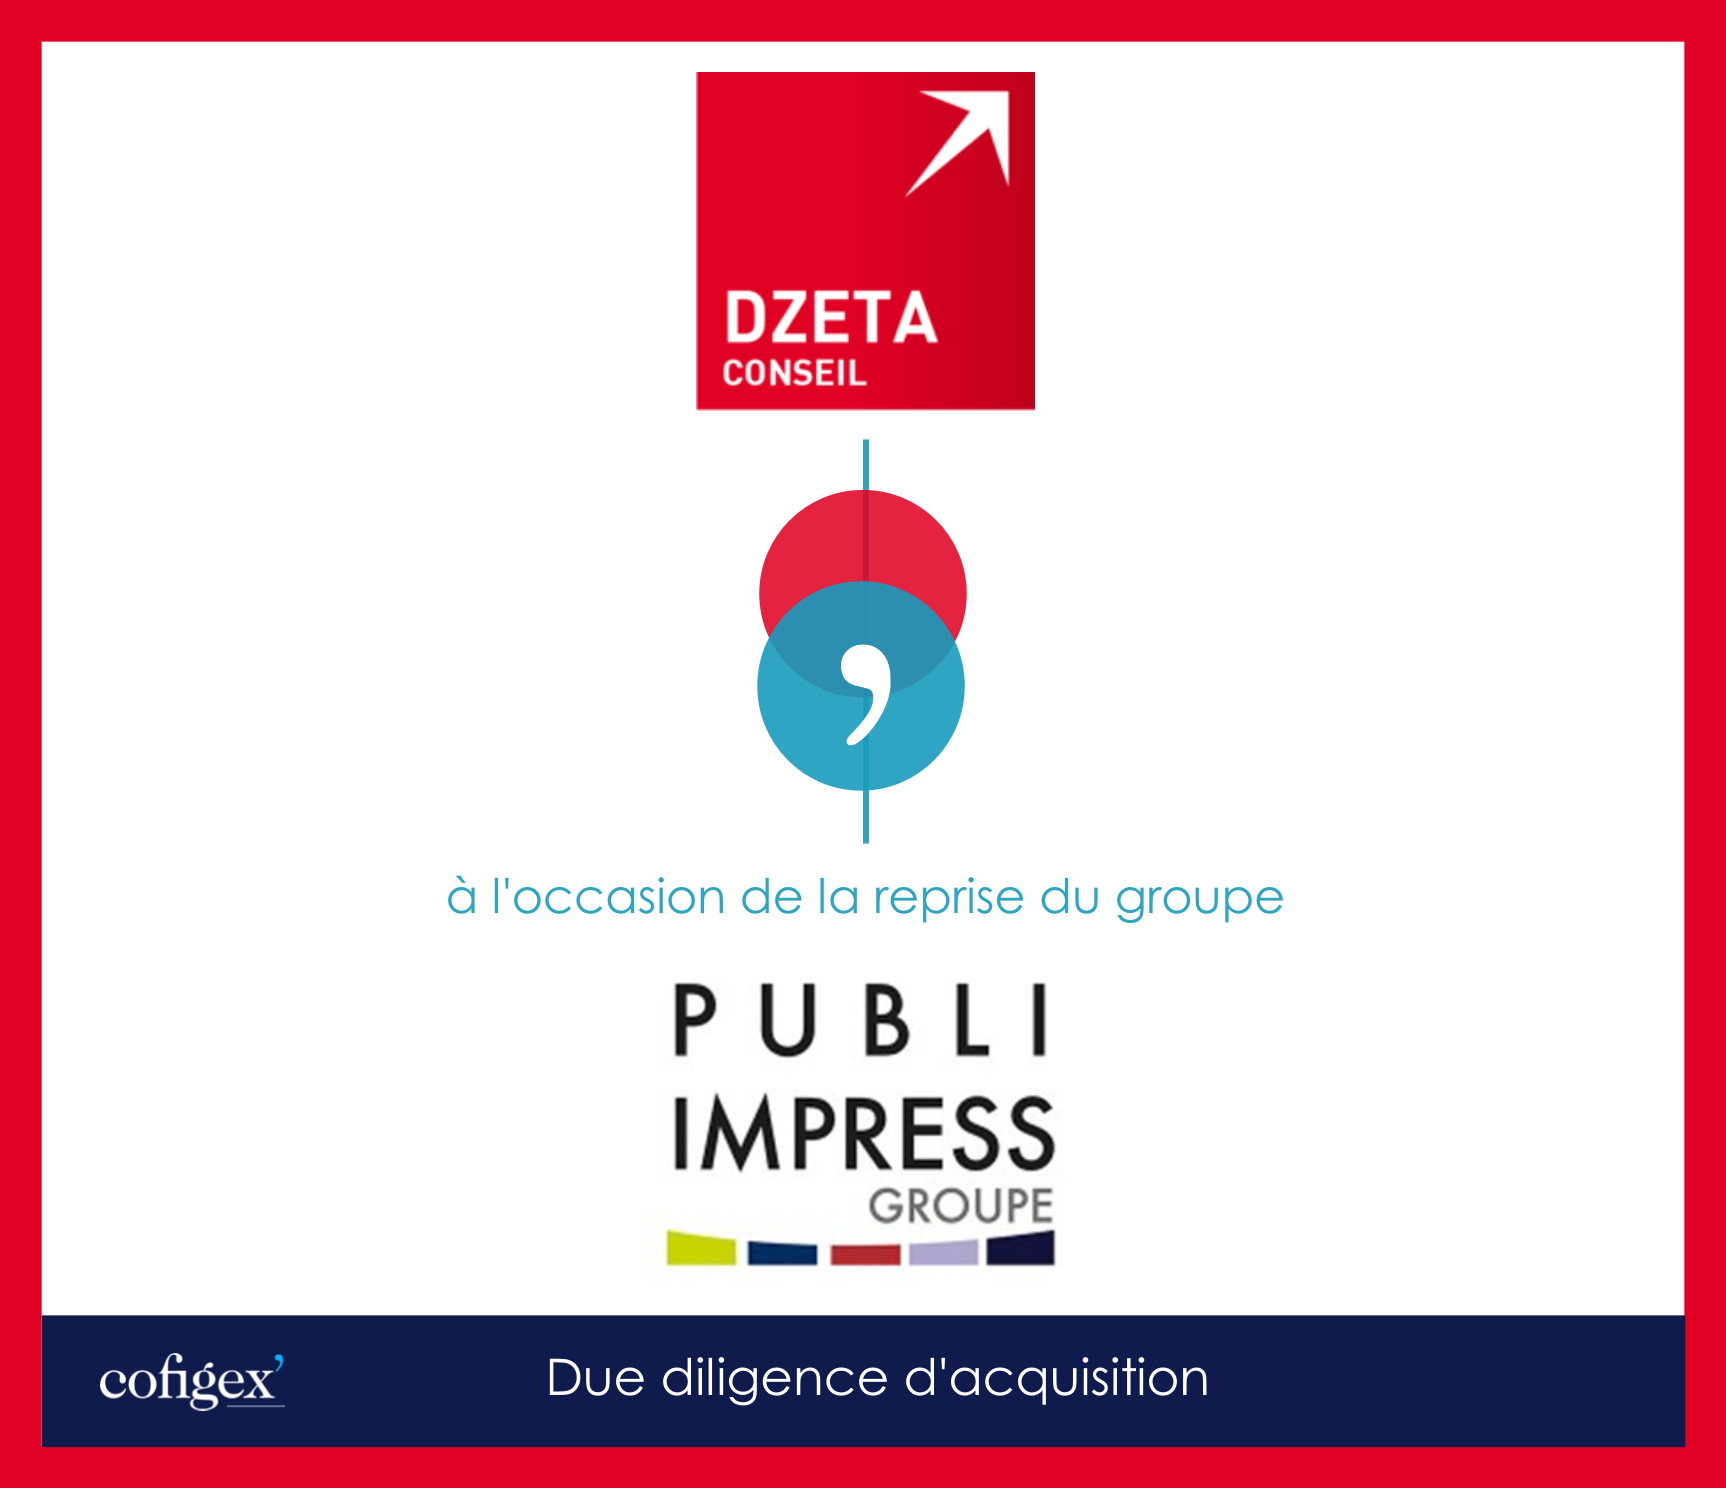 DZETA CONSEIL - Groupe PUBLI IMPRESS